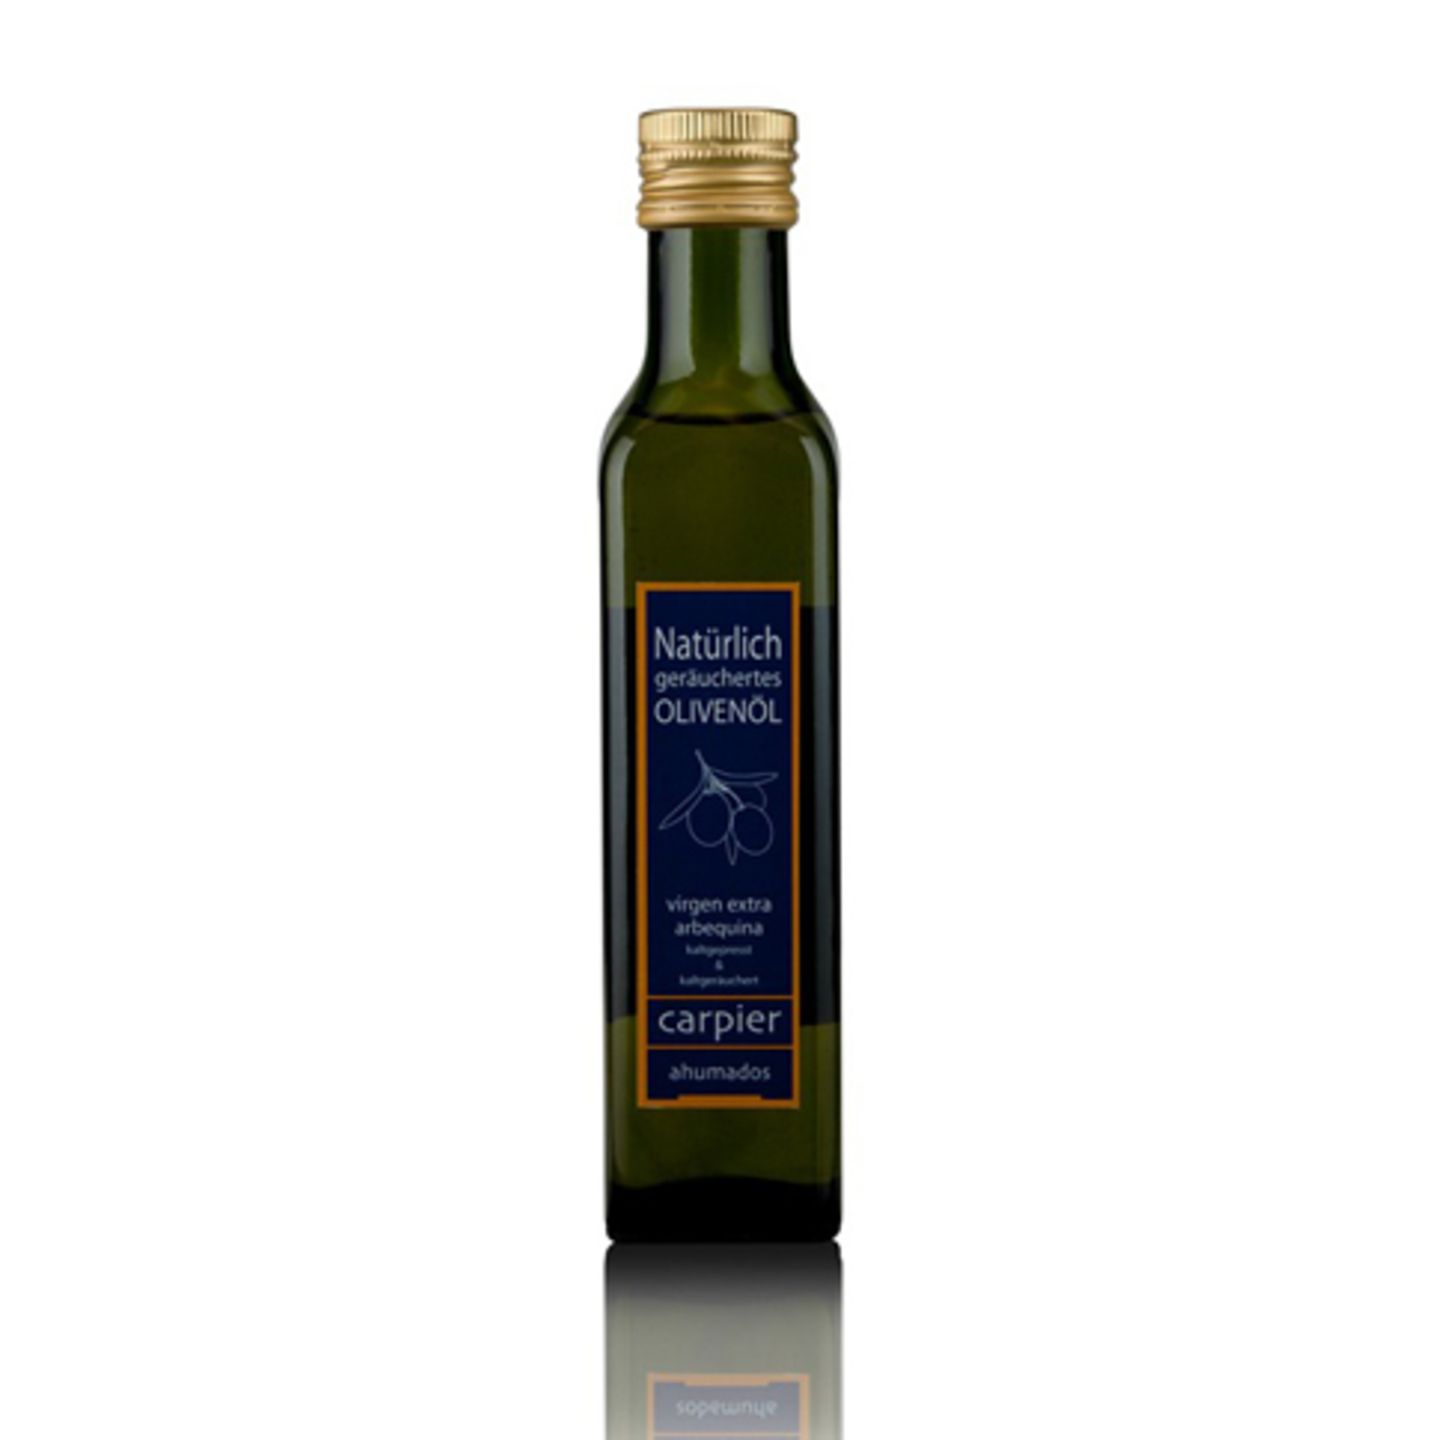 Geräuchertes Edel-Olivenöl